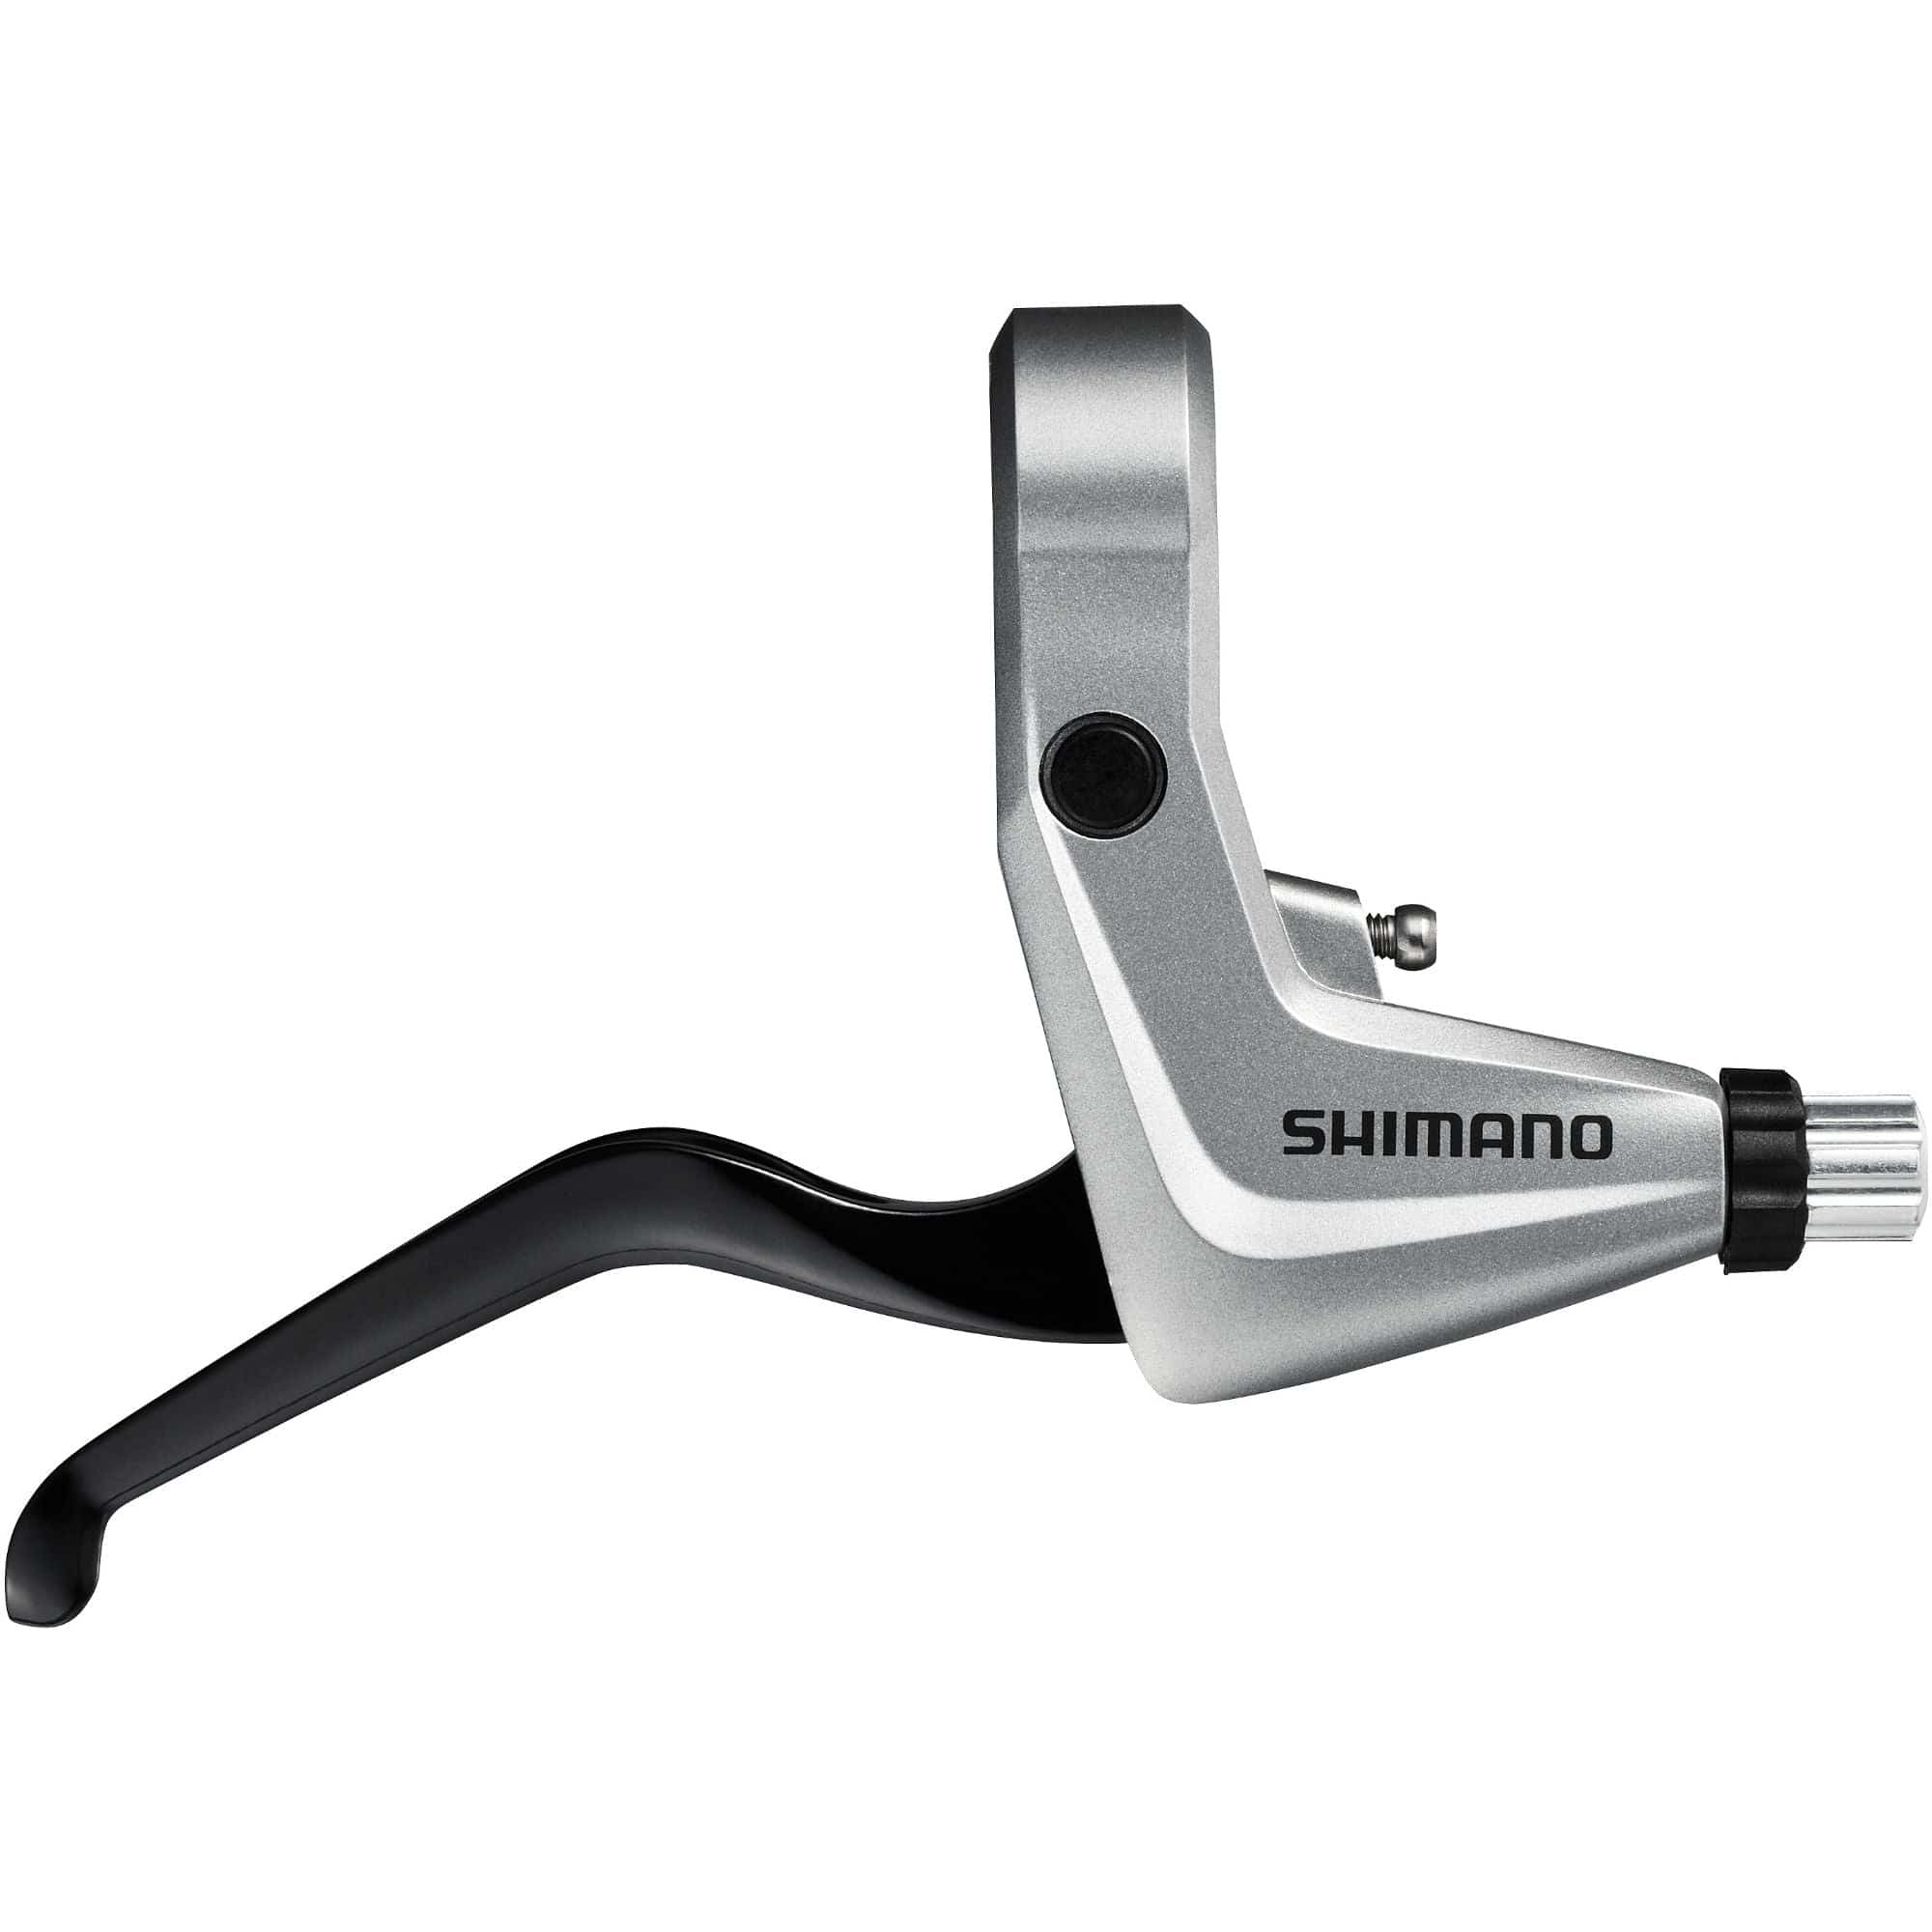 Shimano Alivio BL-T4000 Alivio 2-Finger Brake Levers For V-Brakes image #1